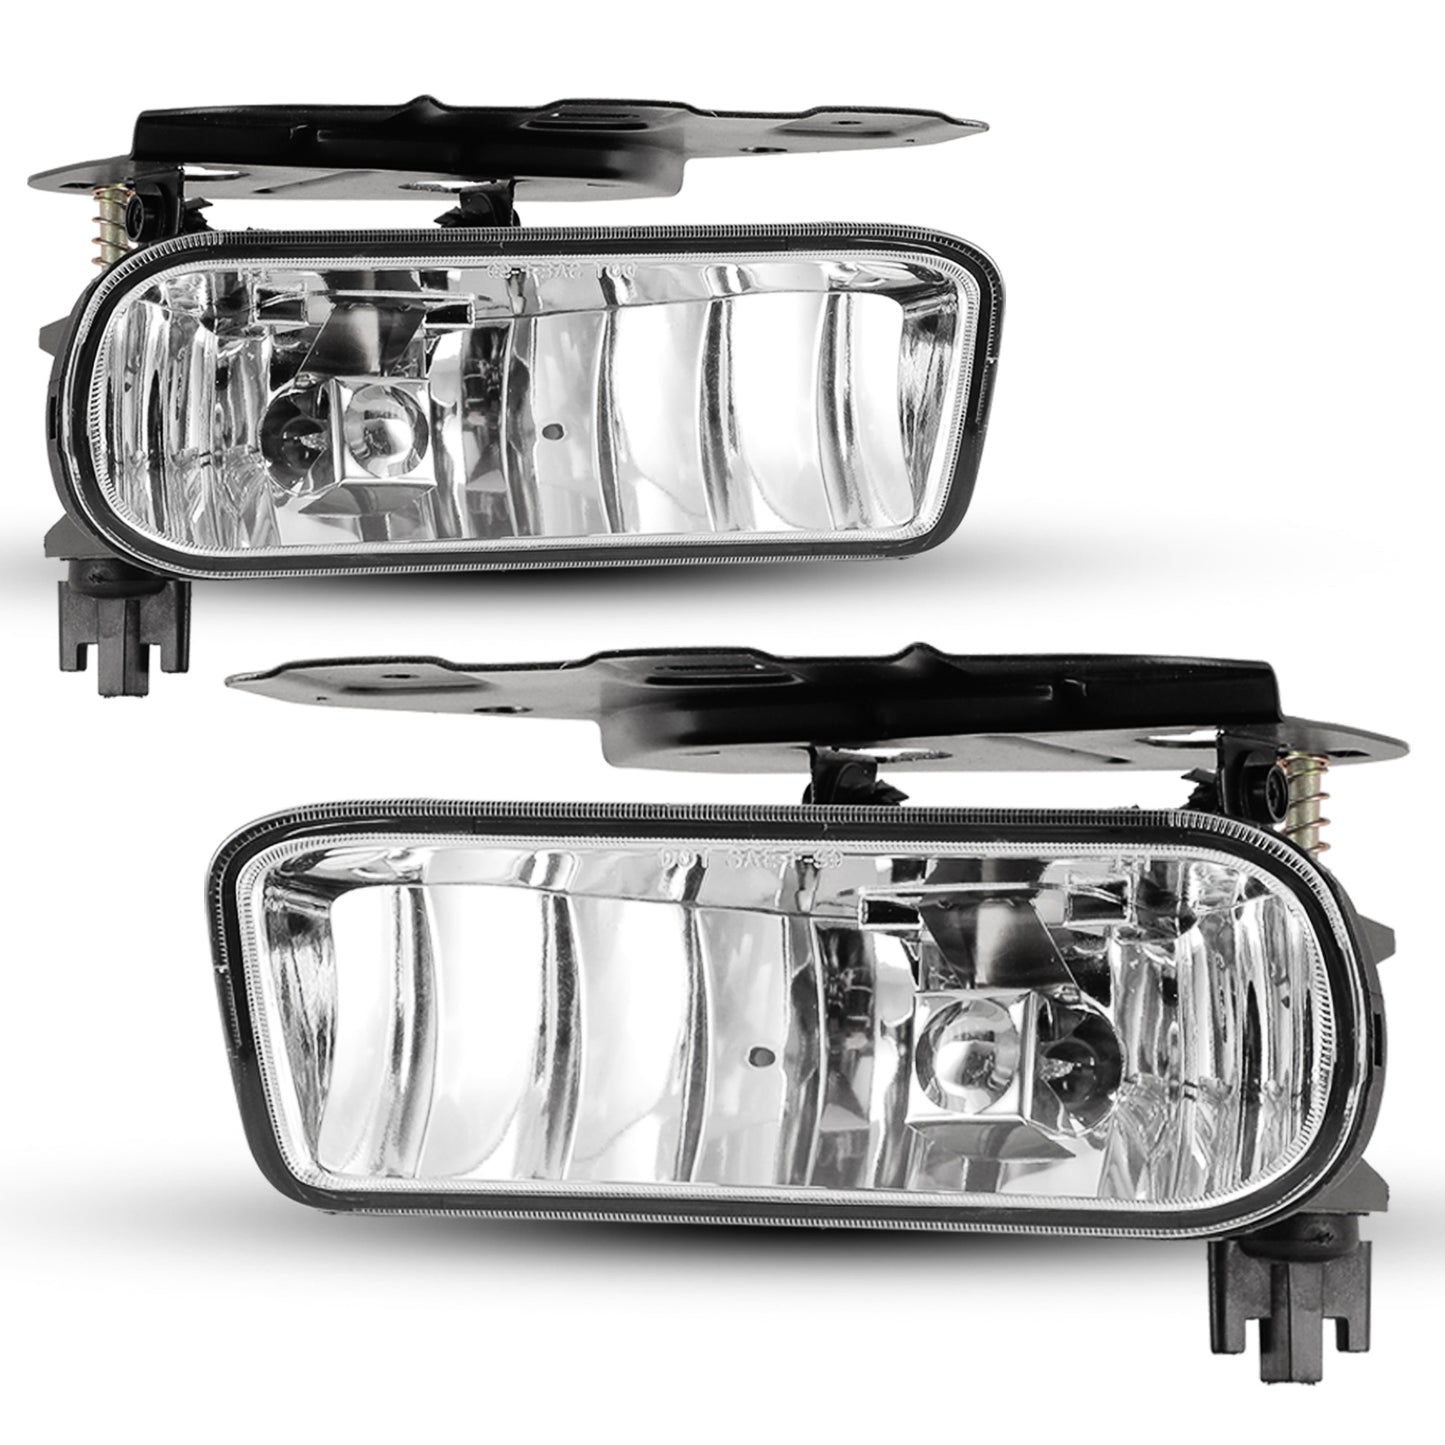 Luces antiniebla de repuesto para Cadillac Escalade 2002-2006, transparentes